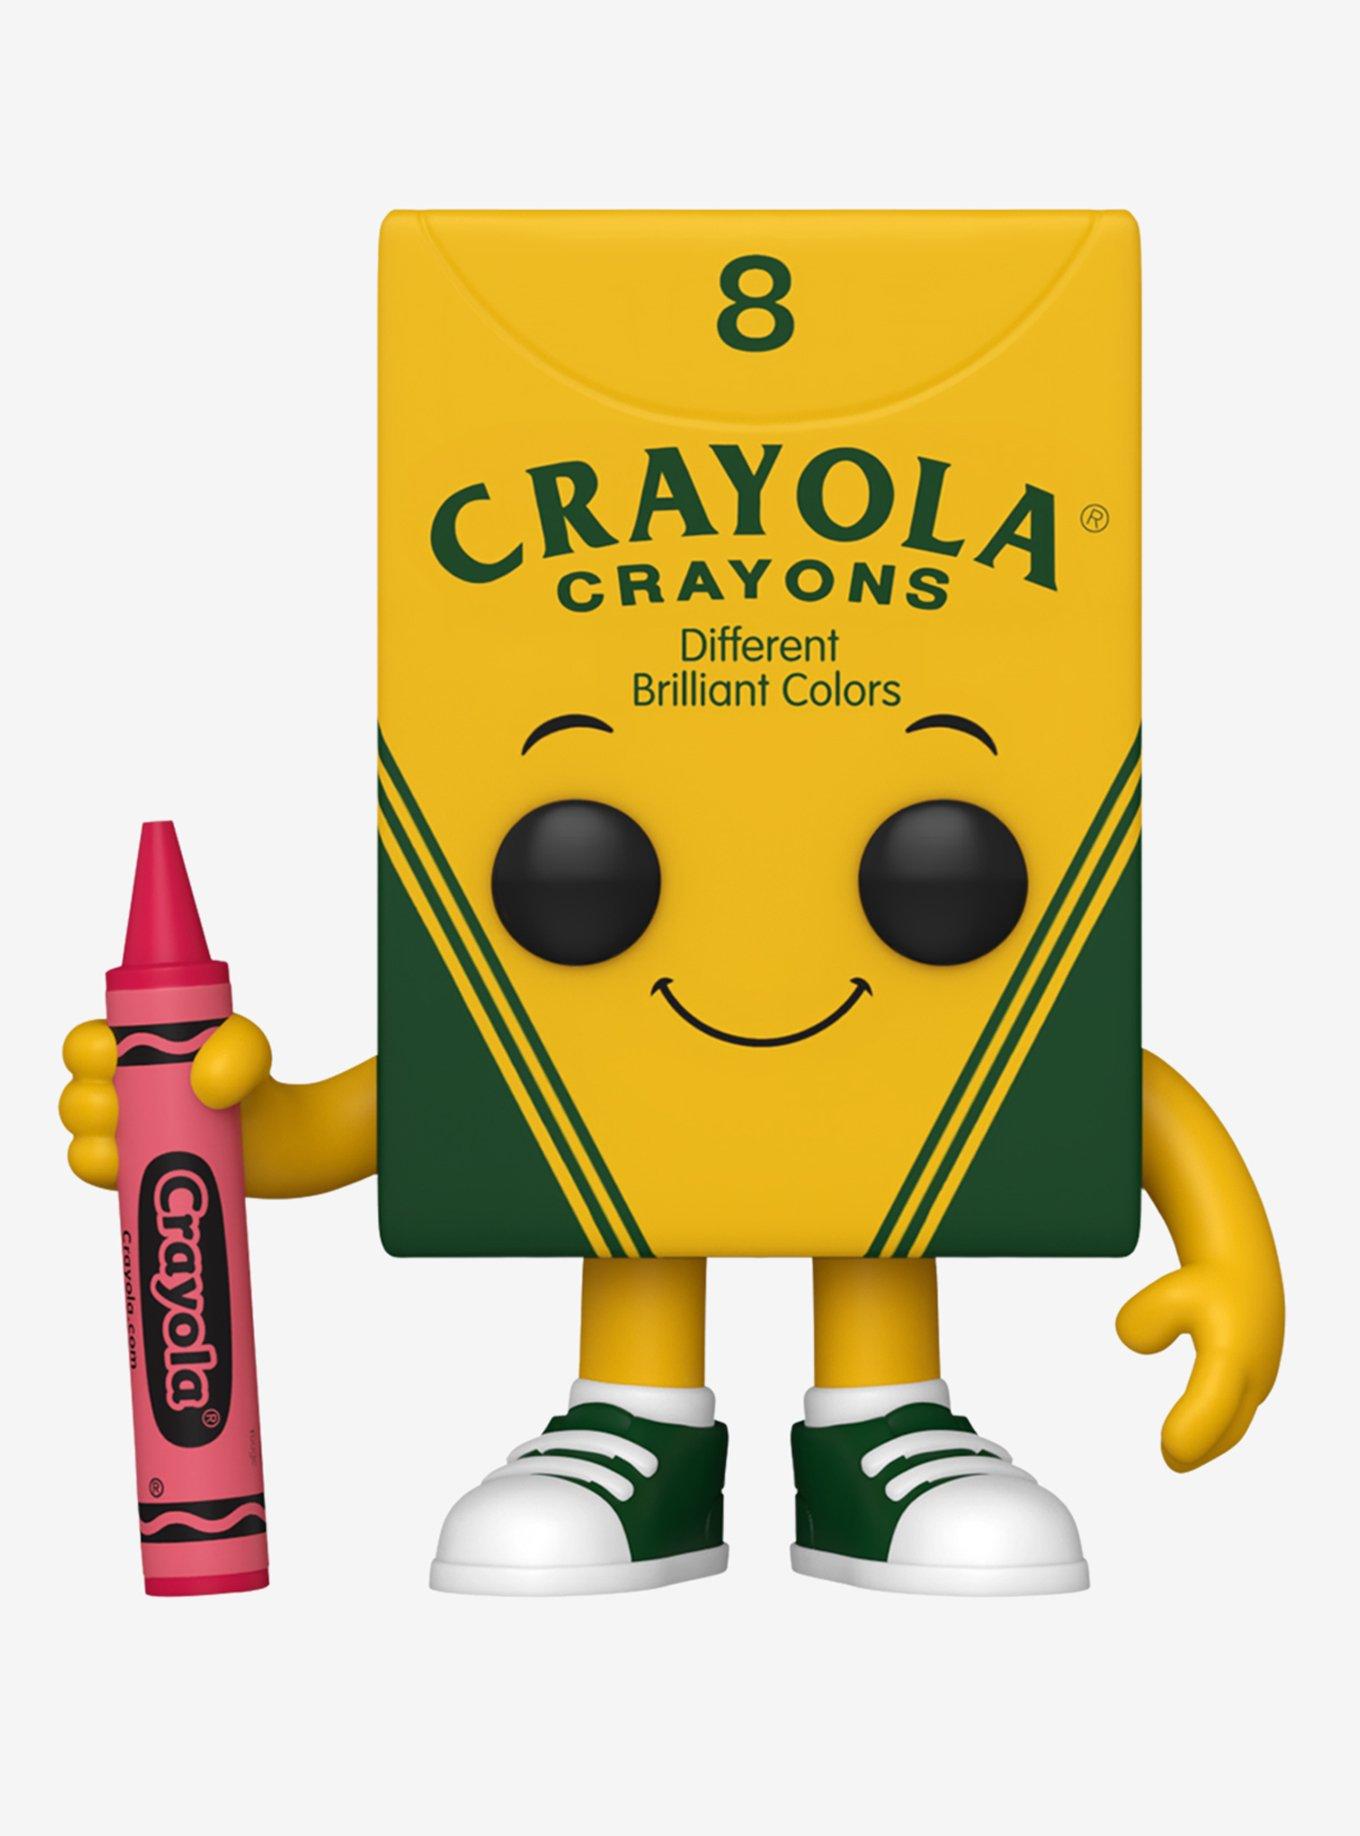 Bathtub Crayon - Brilliant Promos - Be Brilliant!